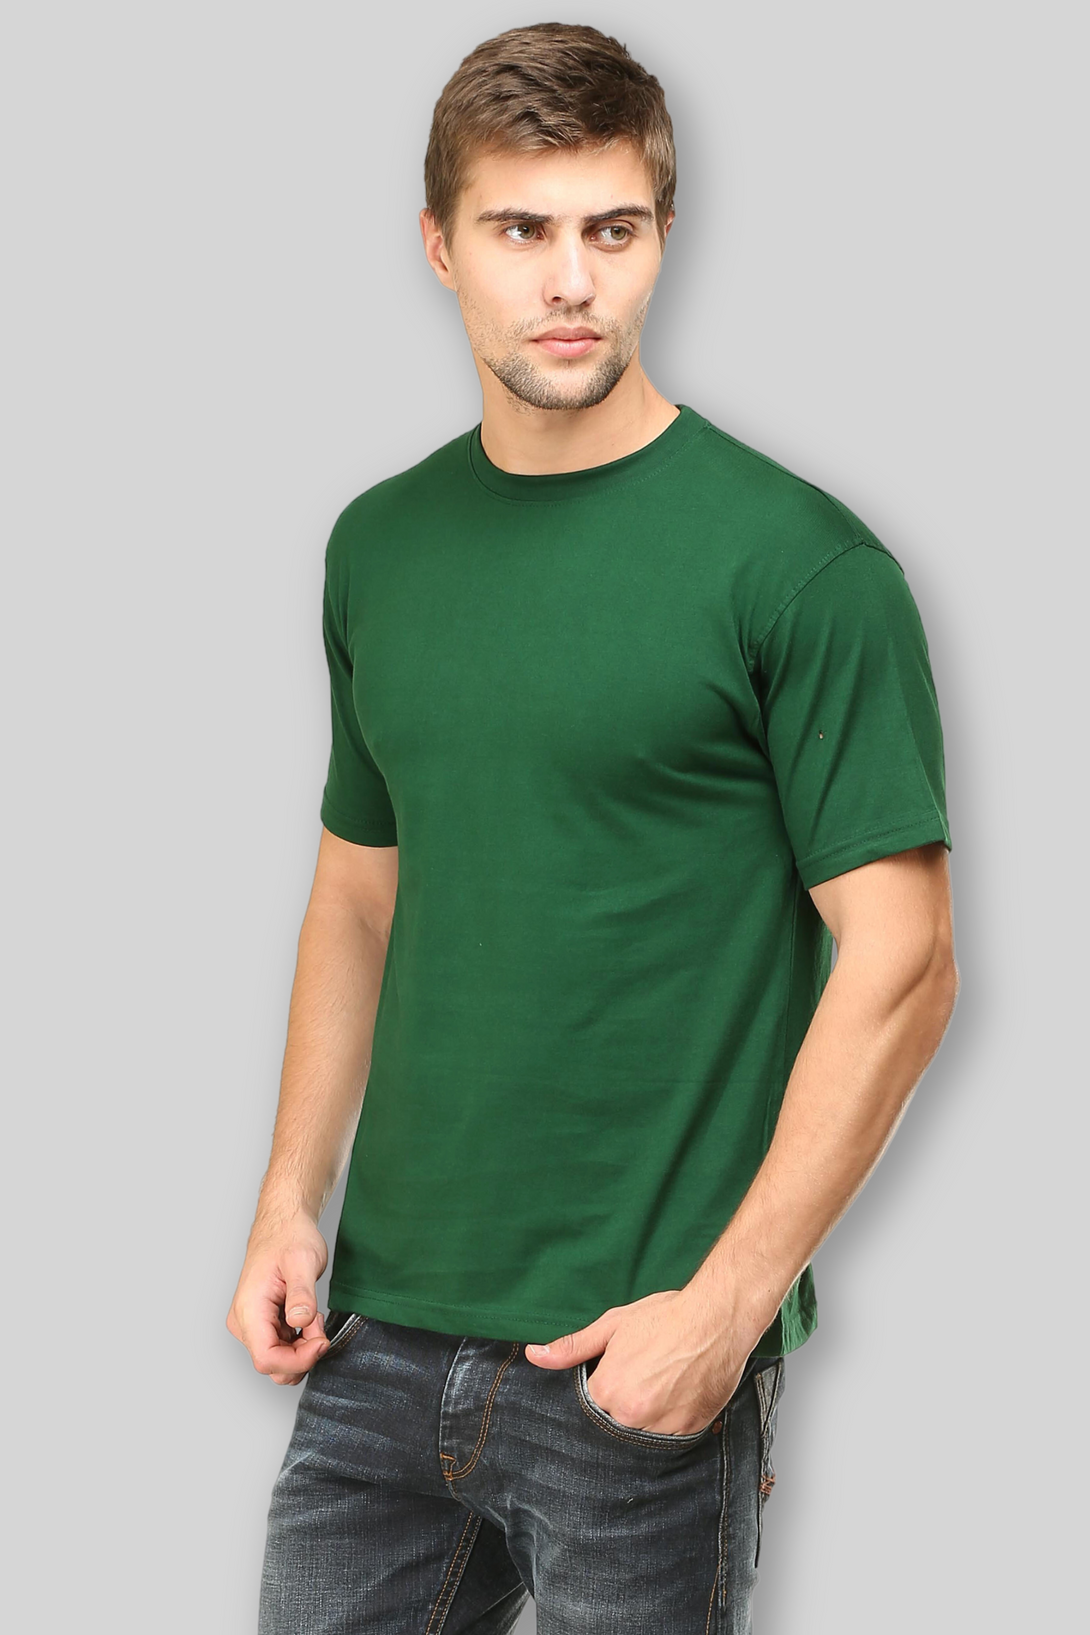 Bottle Green T-Shirt For Men - WowWaves - 4